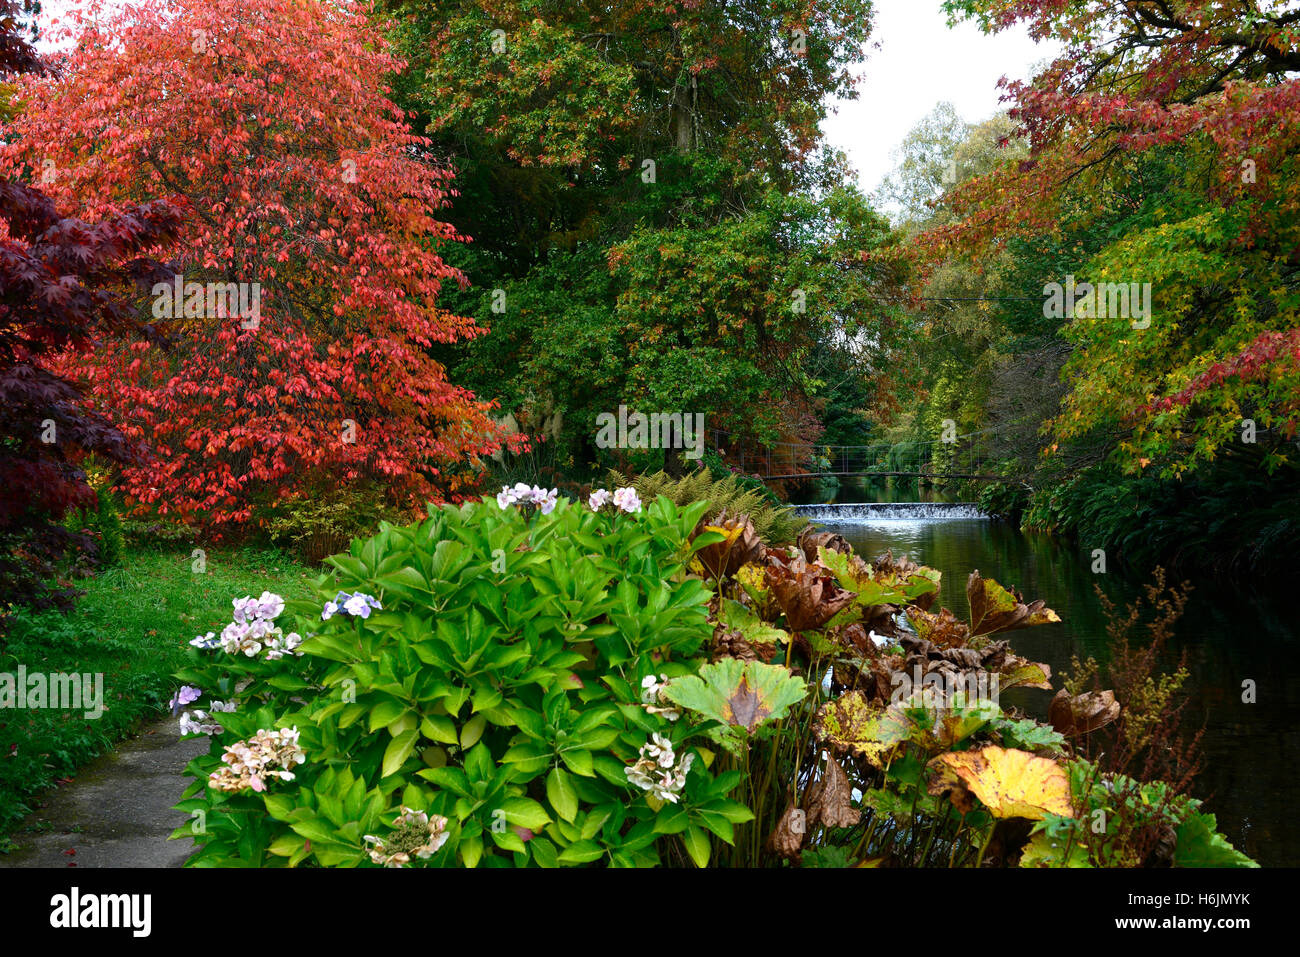 Acer alberi ad albero foglie rosse foglie di autunno colori autunnali colori per cambiare mount usher giardini floreali RM Foto Stock